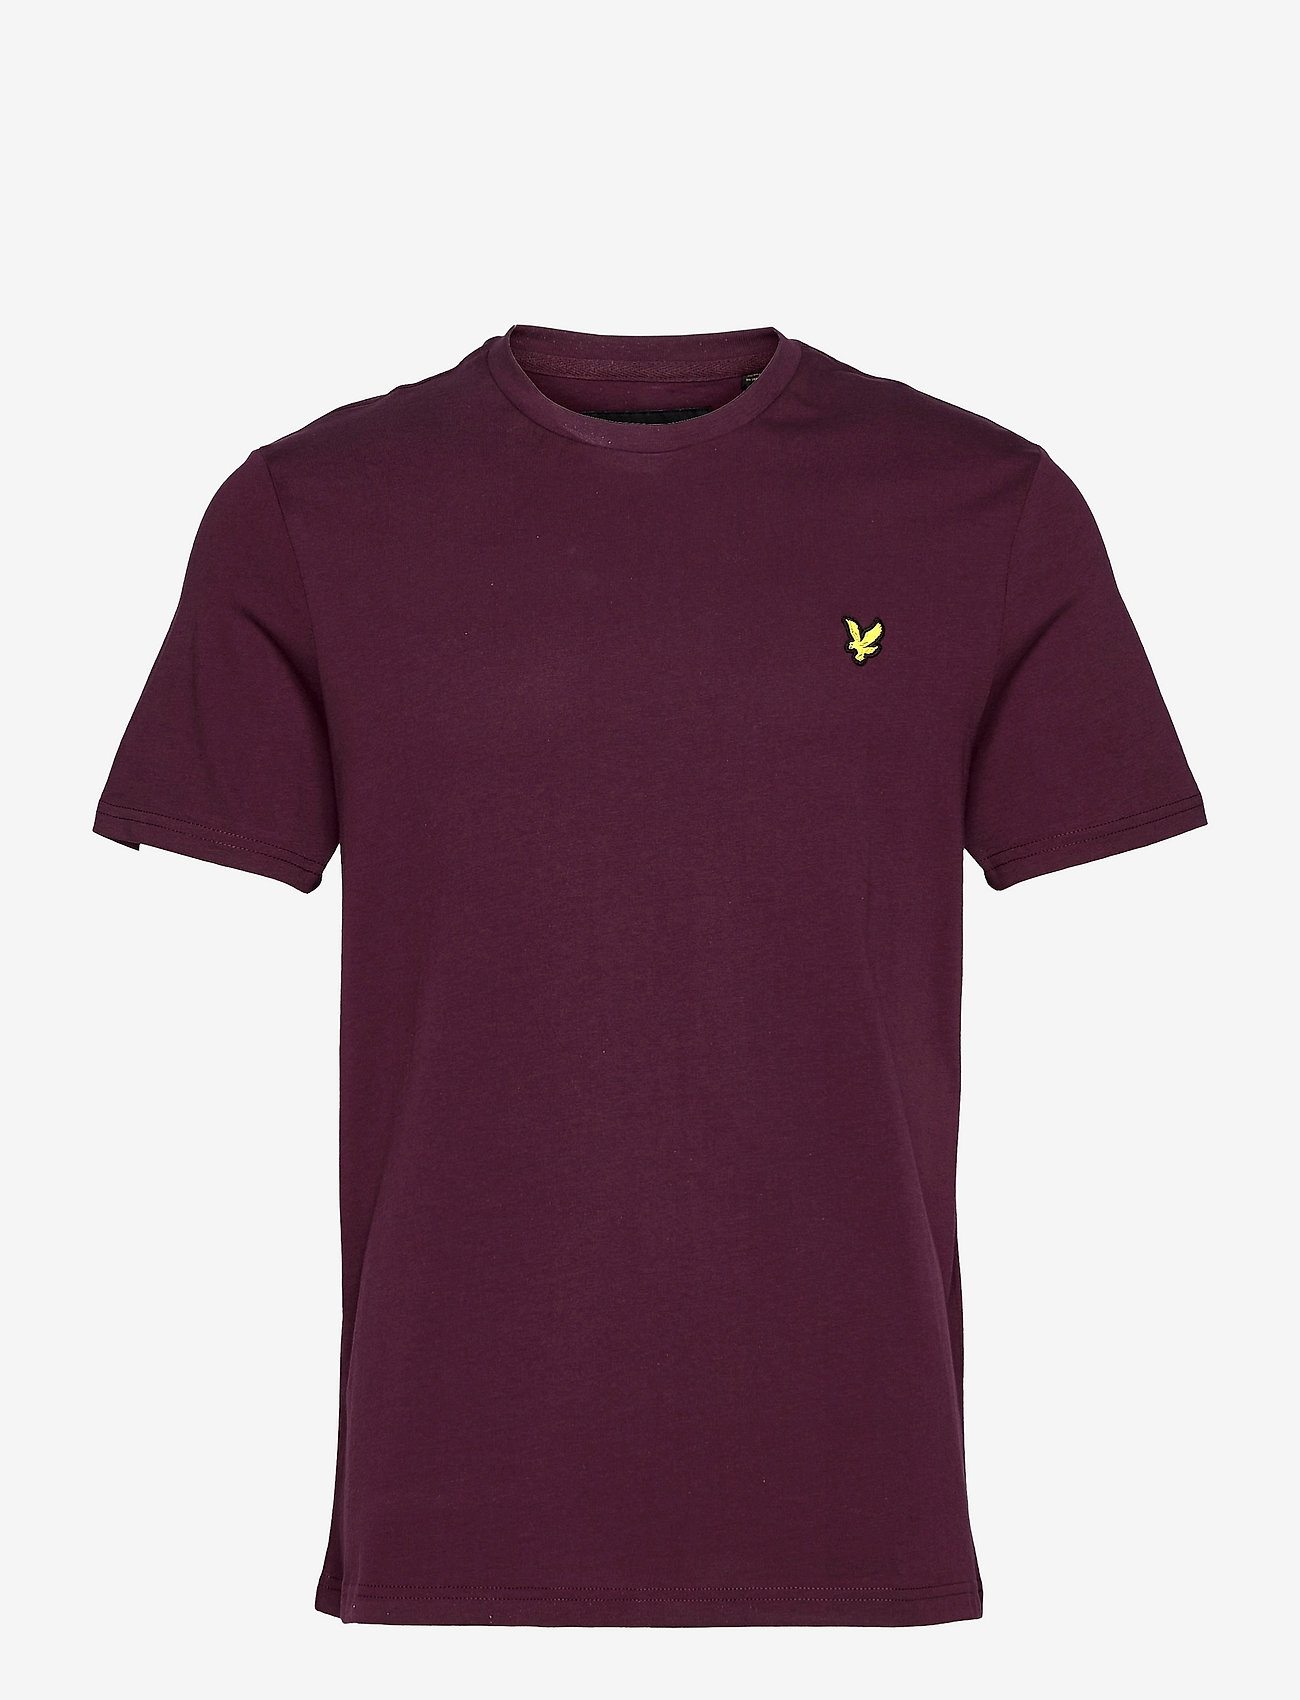 Lyle & Scott - Plain T-Shirt - lowest prices - burgundy - 0